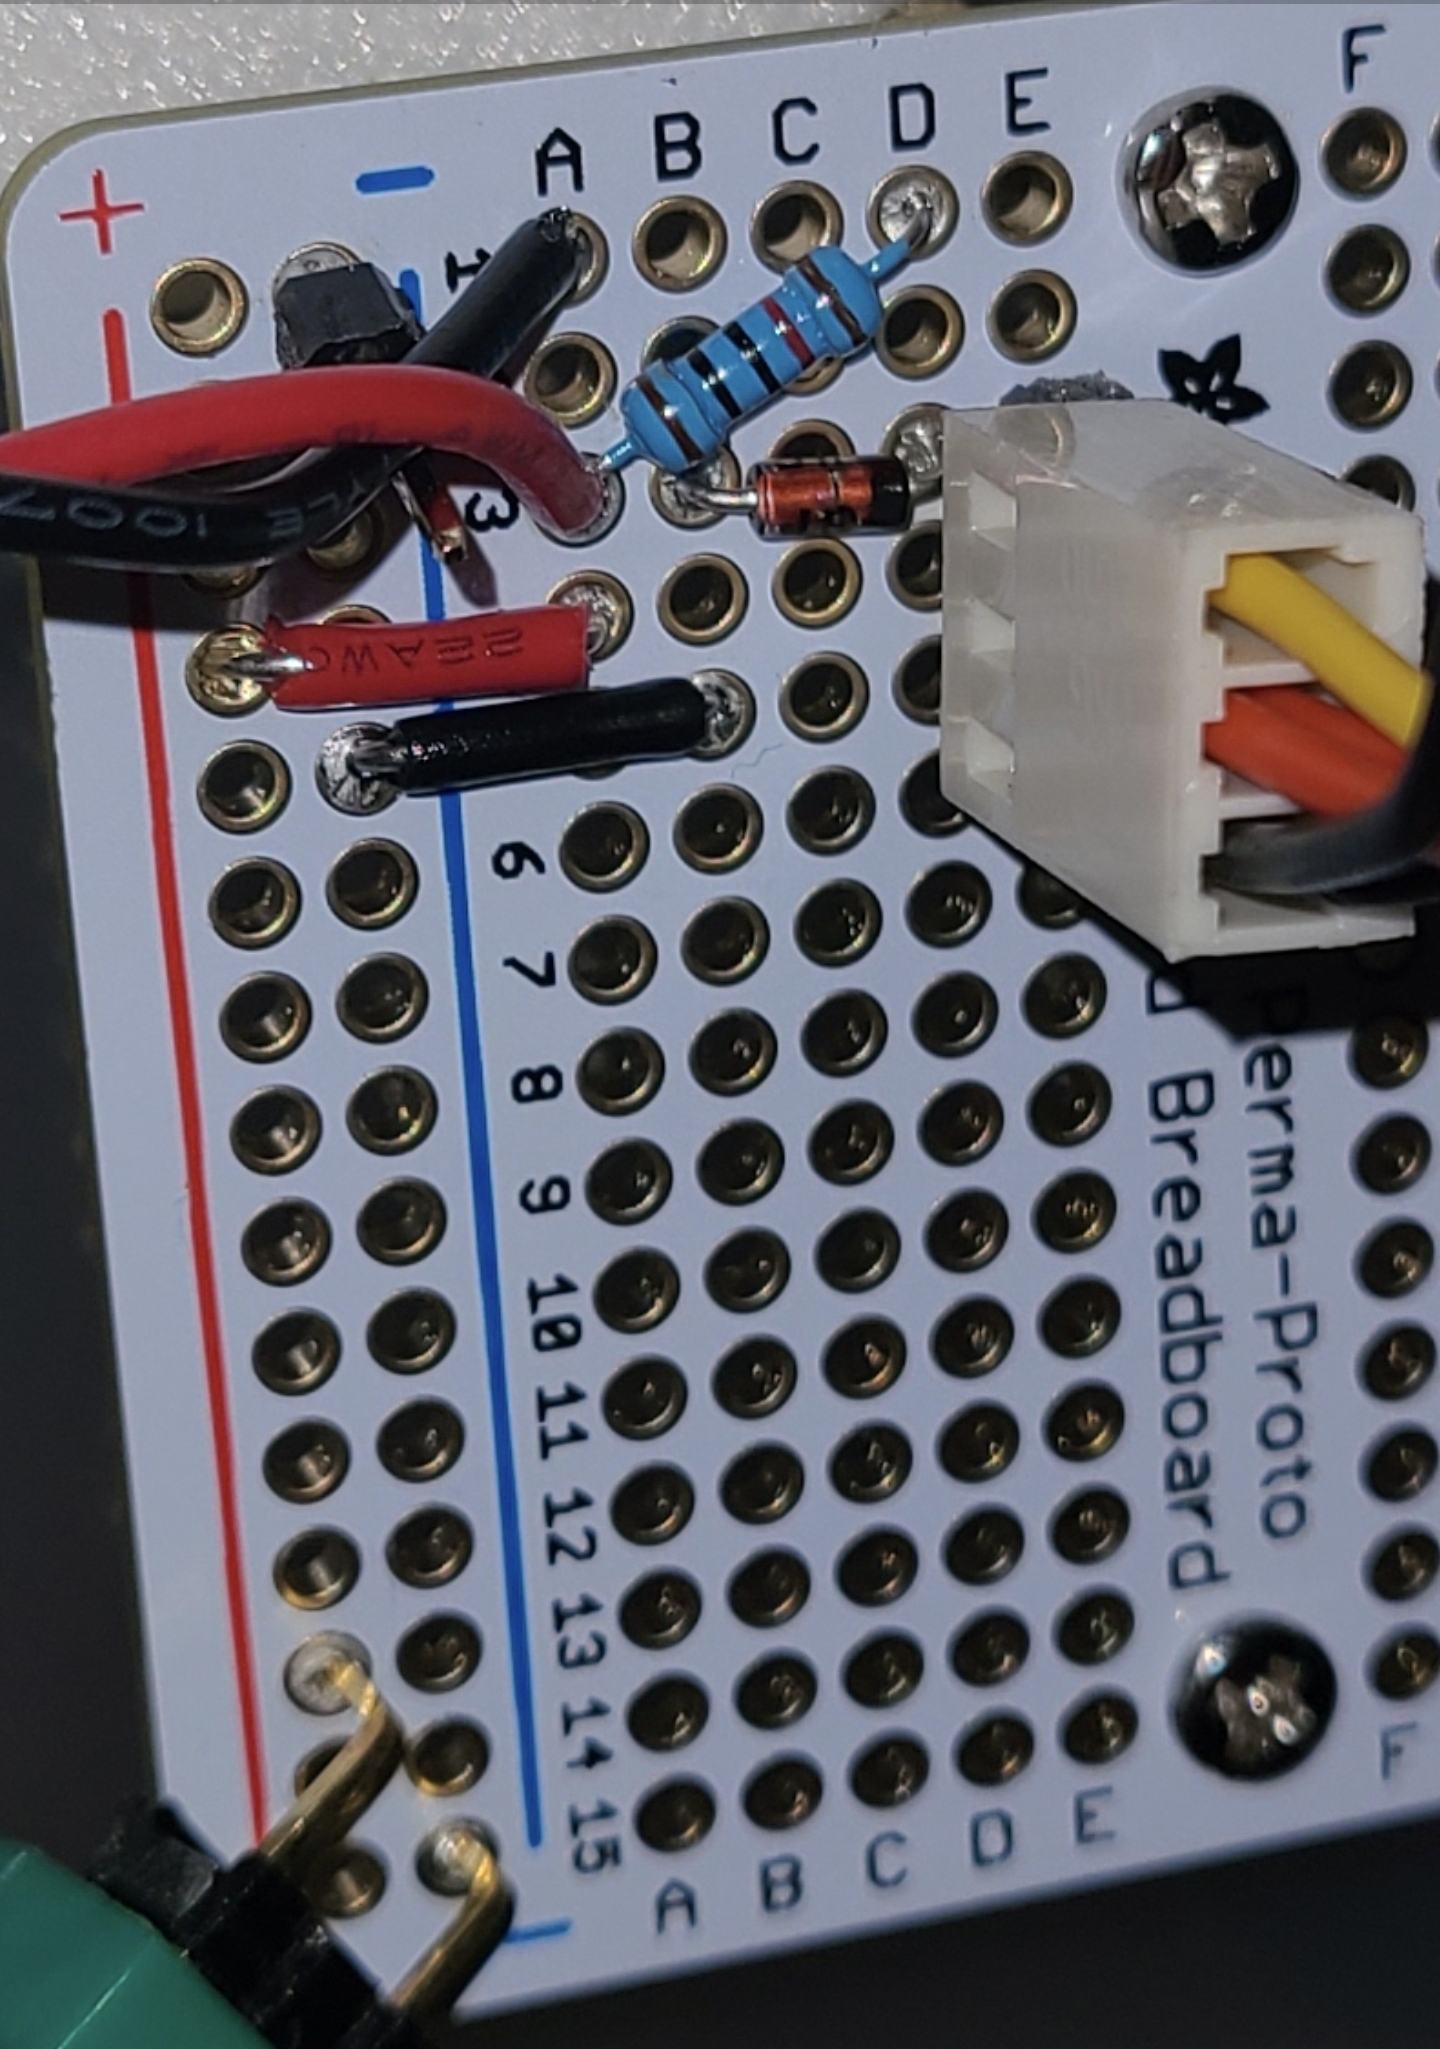 Tach circuit detail